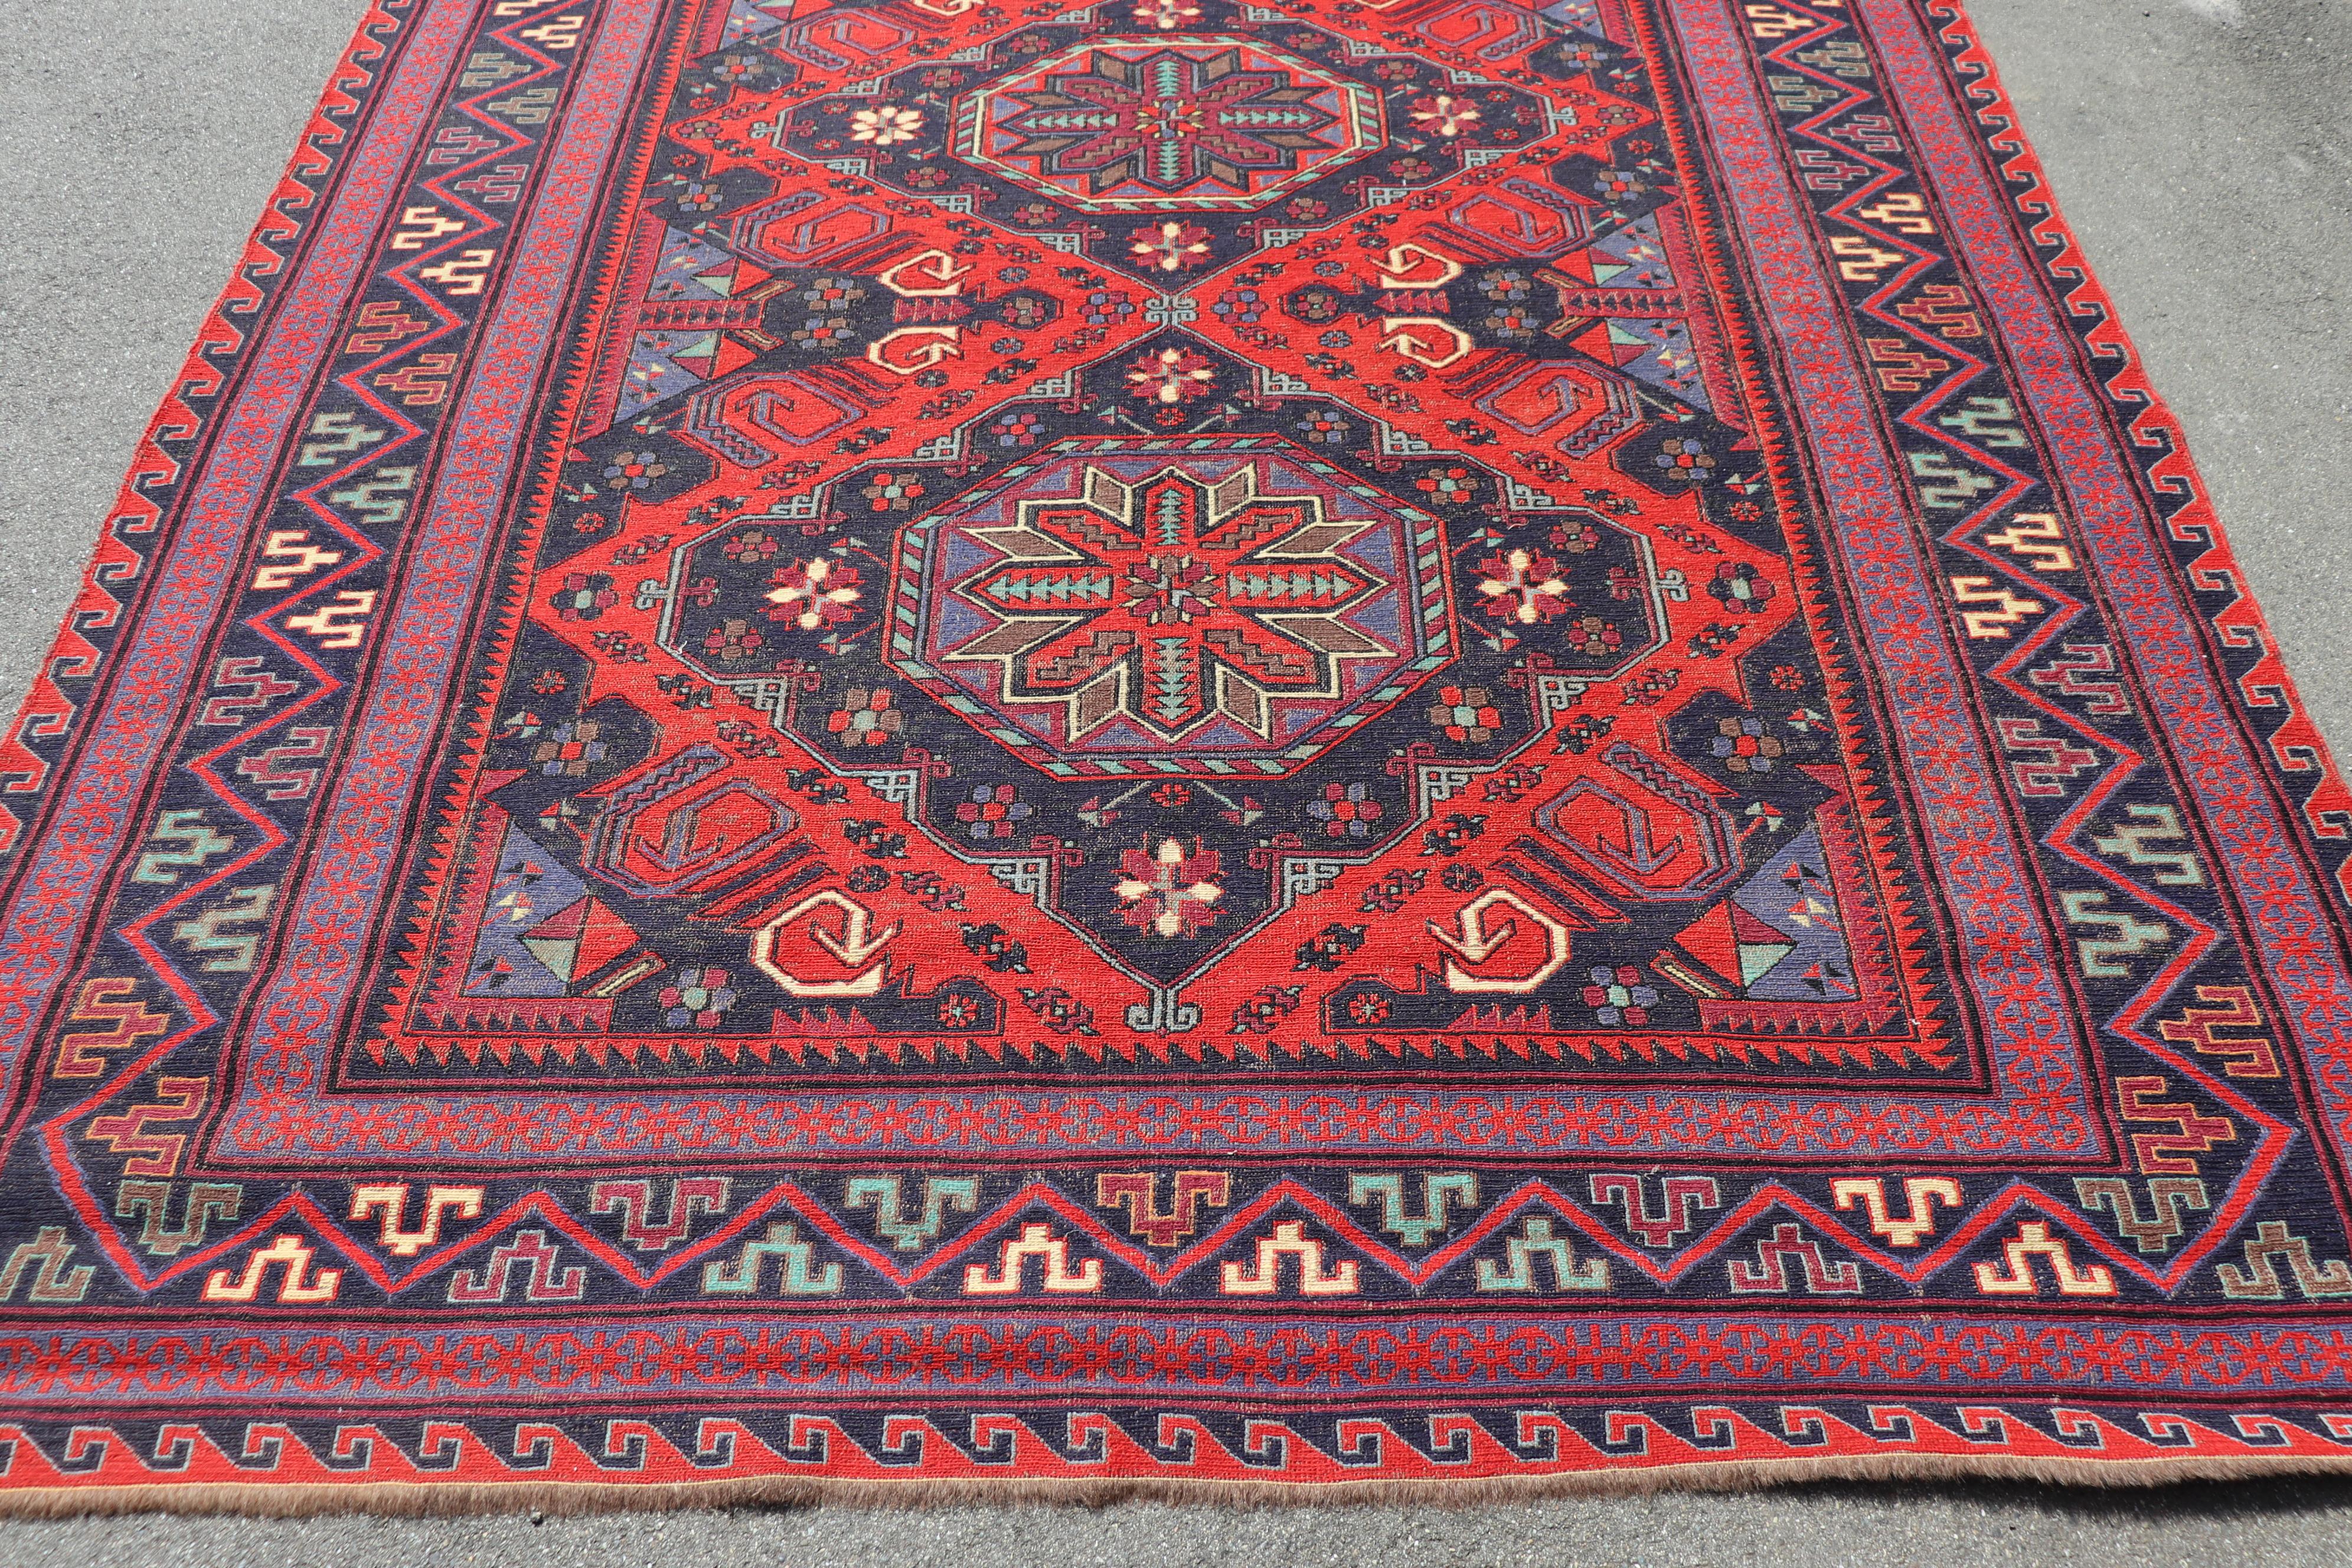 Belle pièce du début du 20ème siècle ( 1930s circa)  grand tapis persan shiraz fait à la main en laine. Ce fantastique tapis est dans la couleur principale rouge avec un motif de médaillons centraux sur fond bleu. Conditions d'utilisation.
   